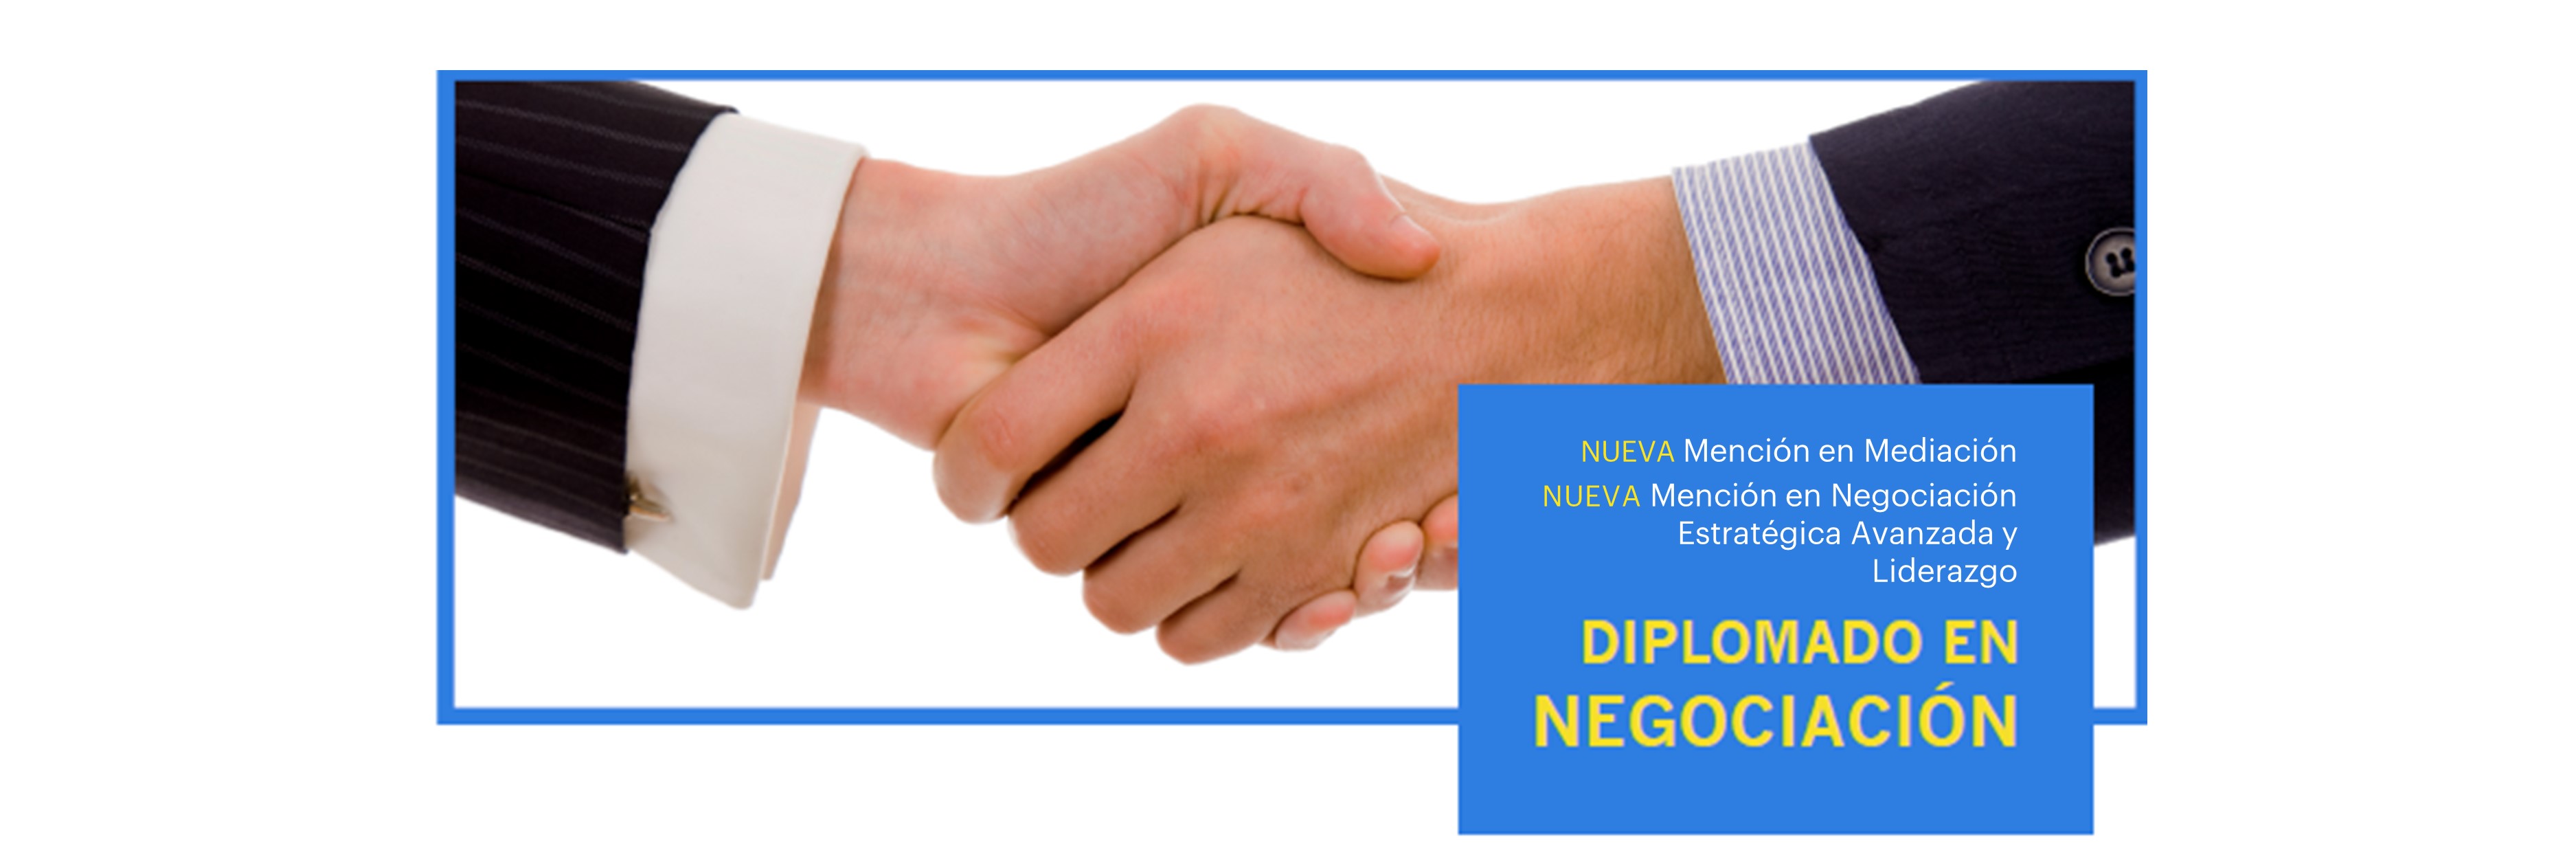 Diplomado en Negociación 2019 2